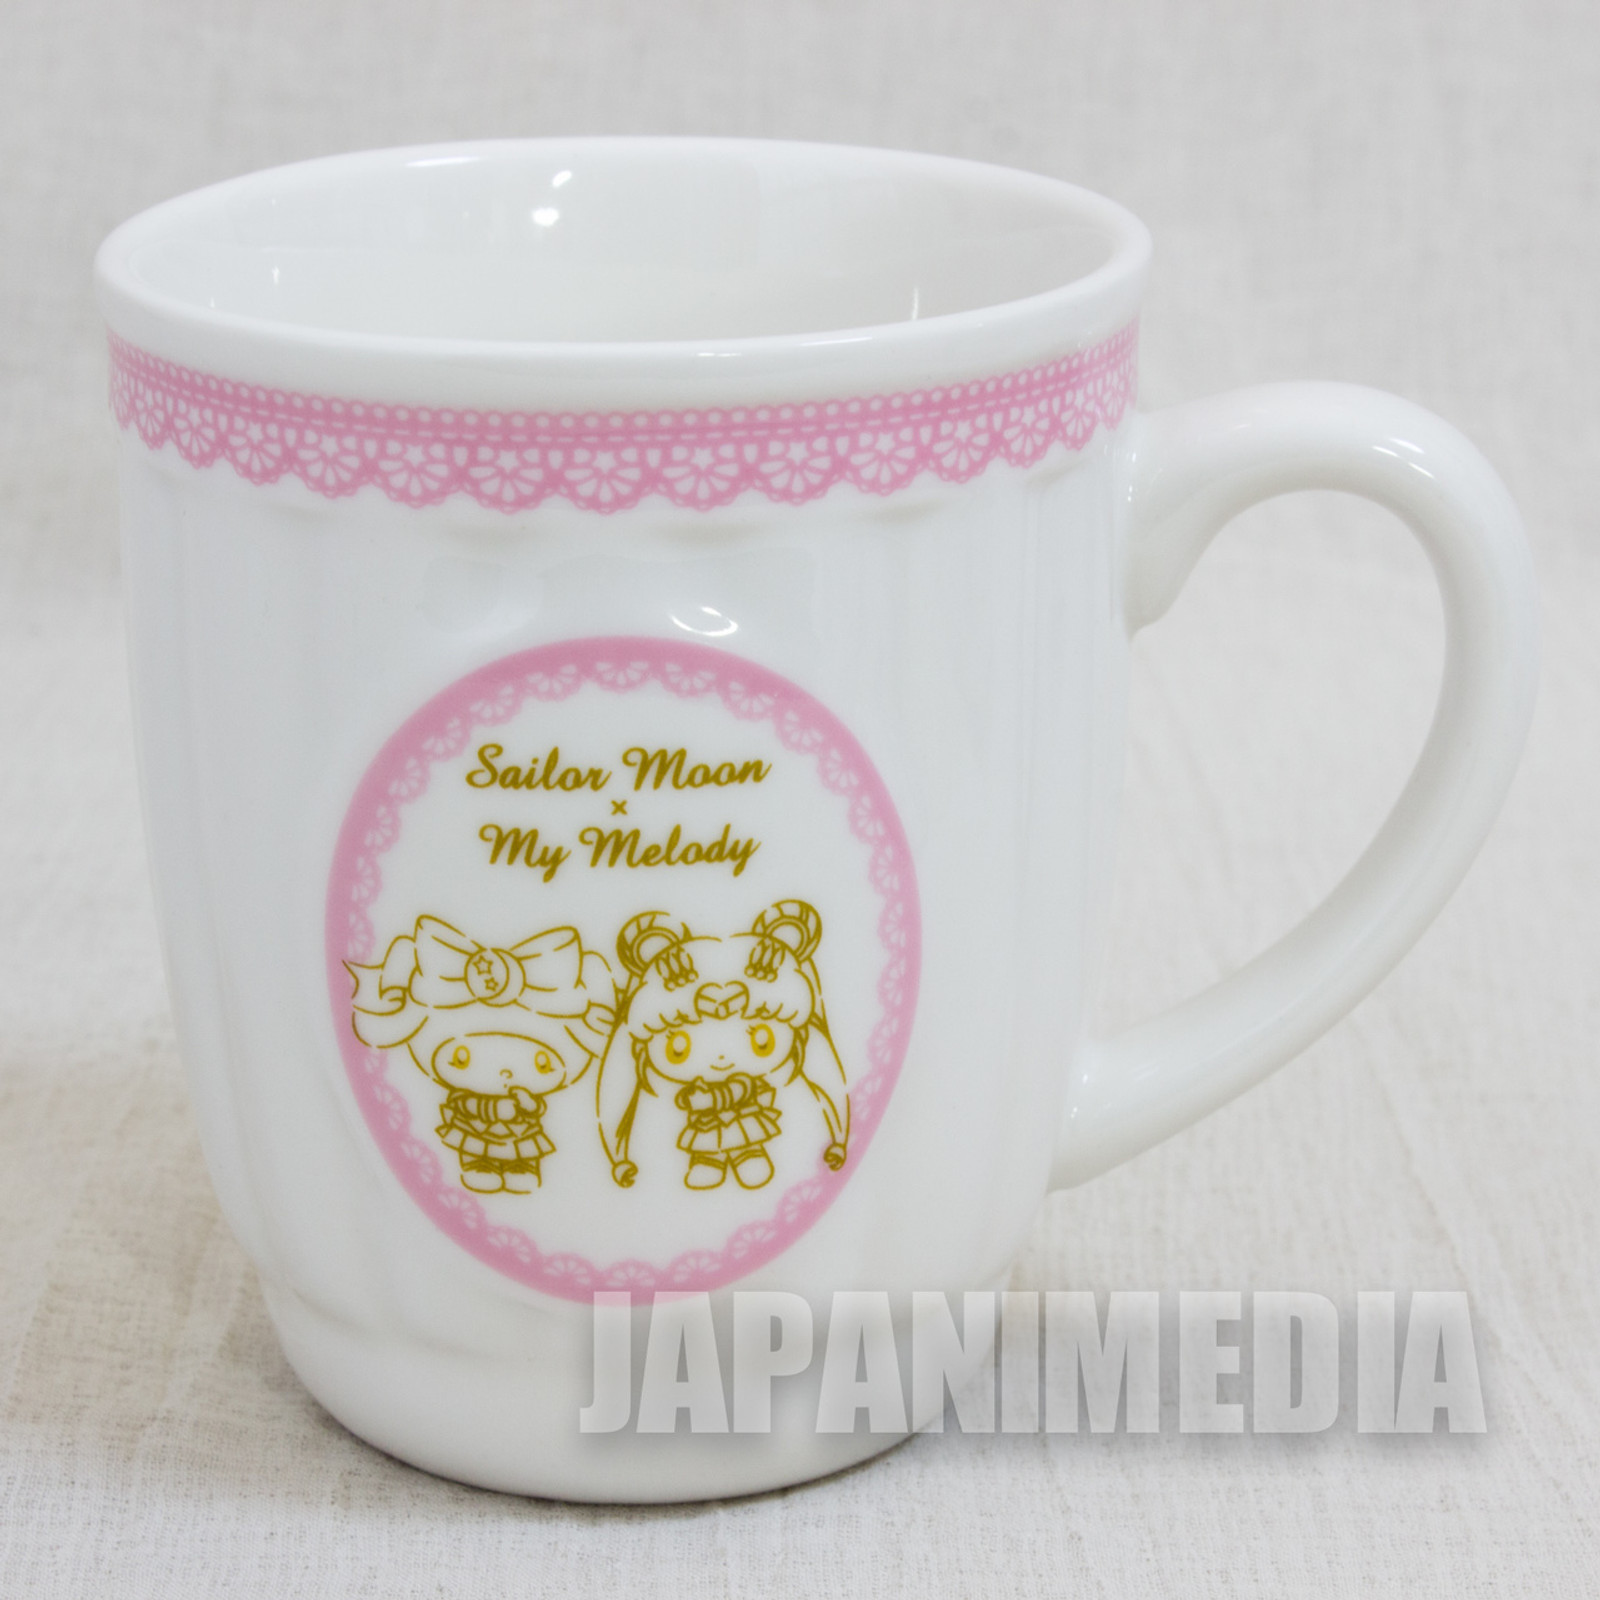 Sailor Moon x My Malody Mug Sanrio JAPAN ANIME MANGA